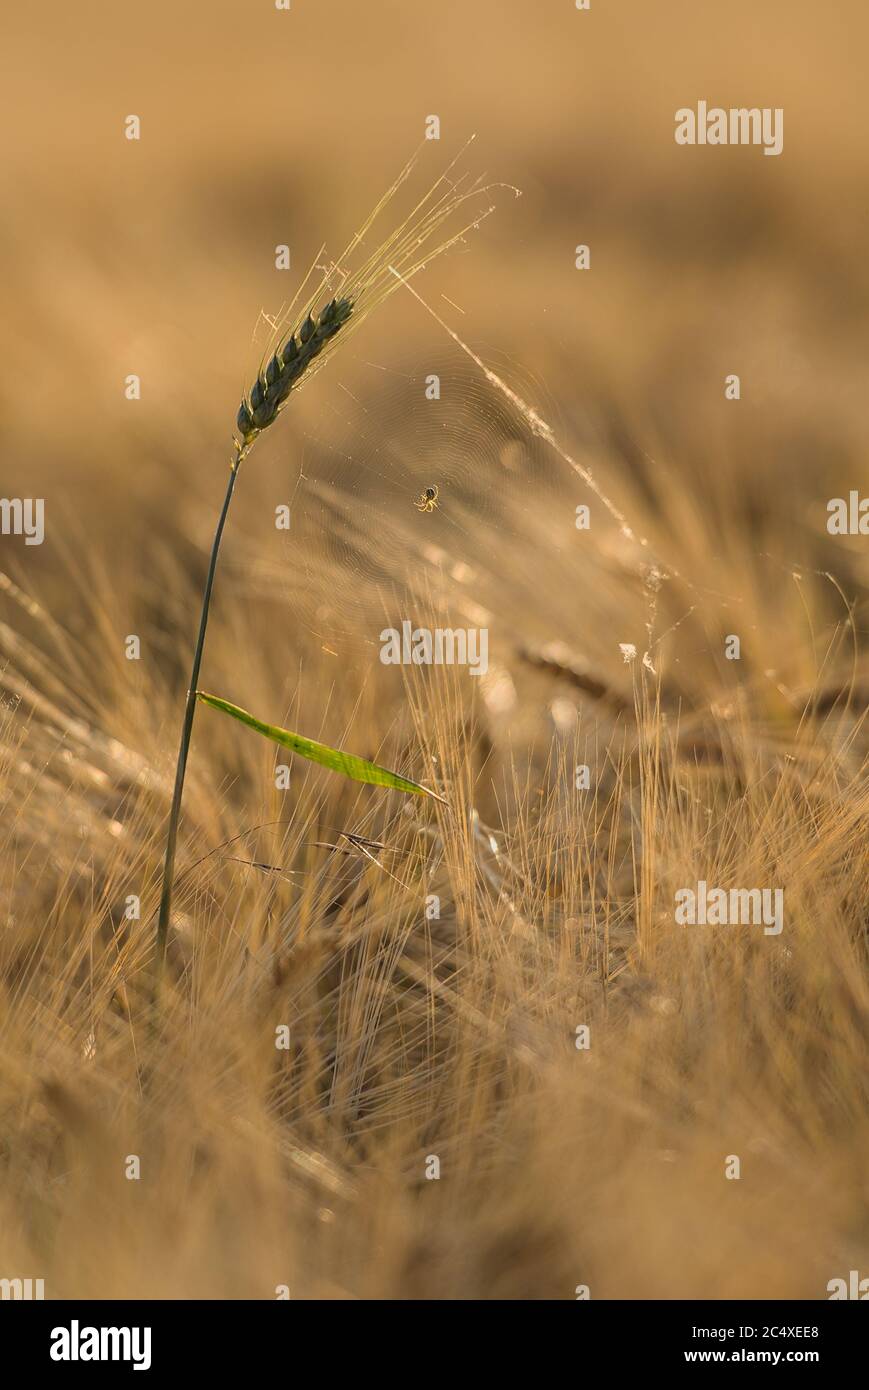 Spinnennetz auf einer grünen Ähre im Getreidefeld Stock Photo